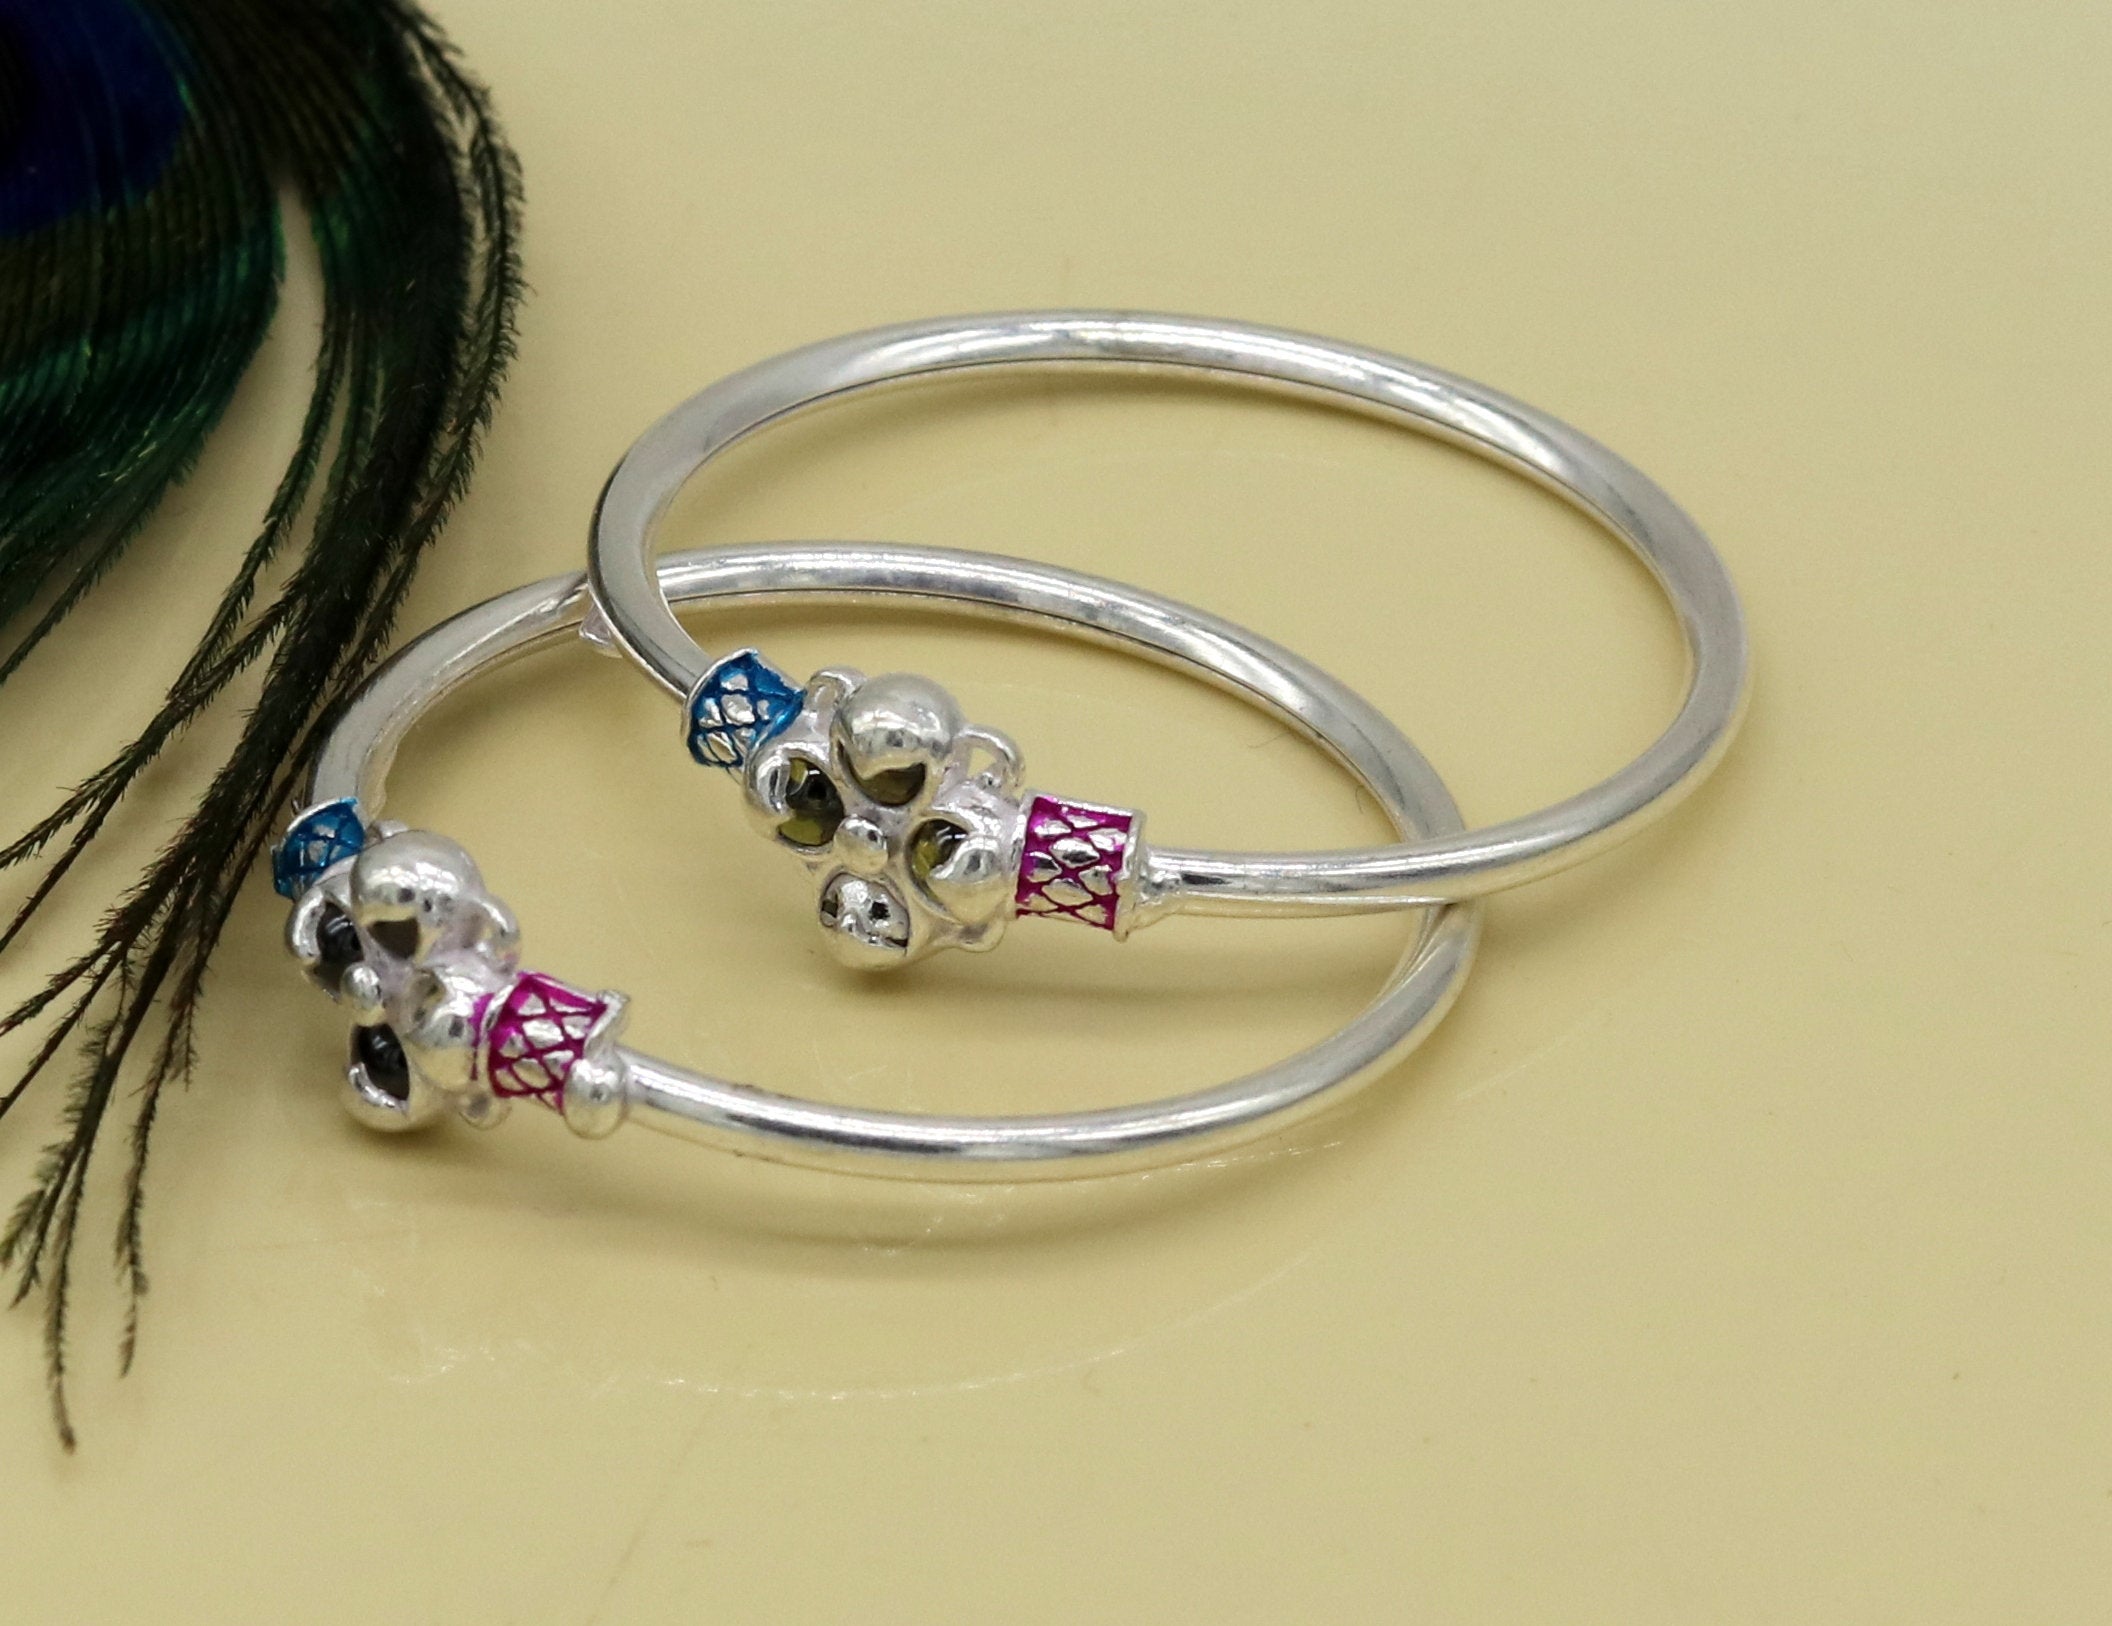 Maine Escape - Lavender Sea Glass Charm Bracelet